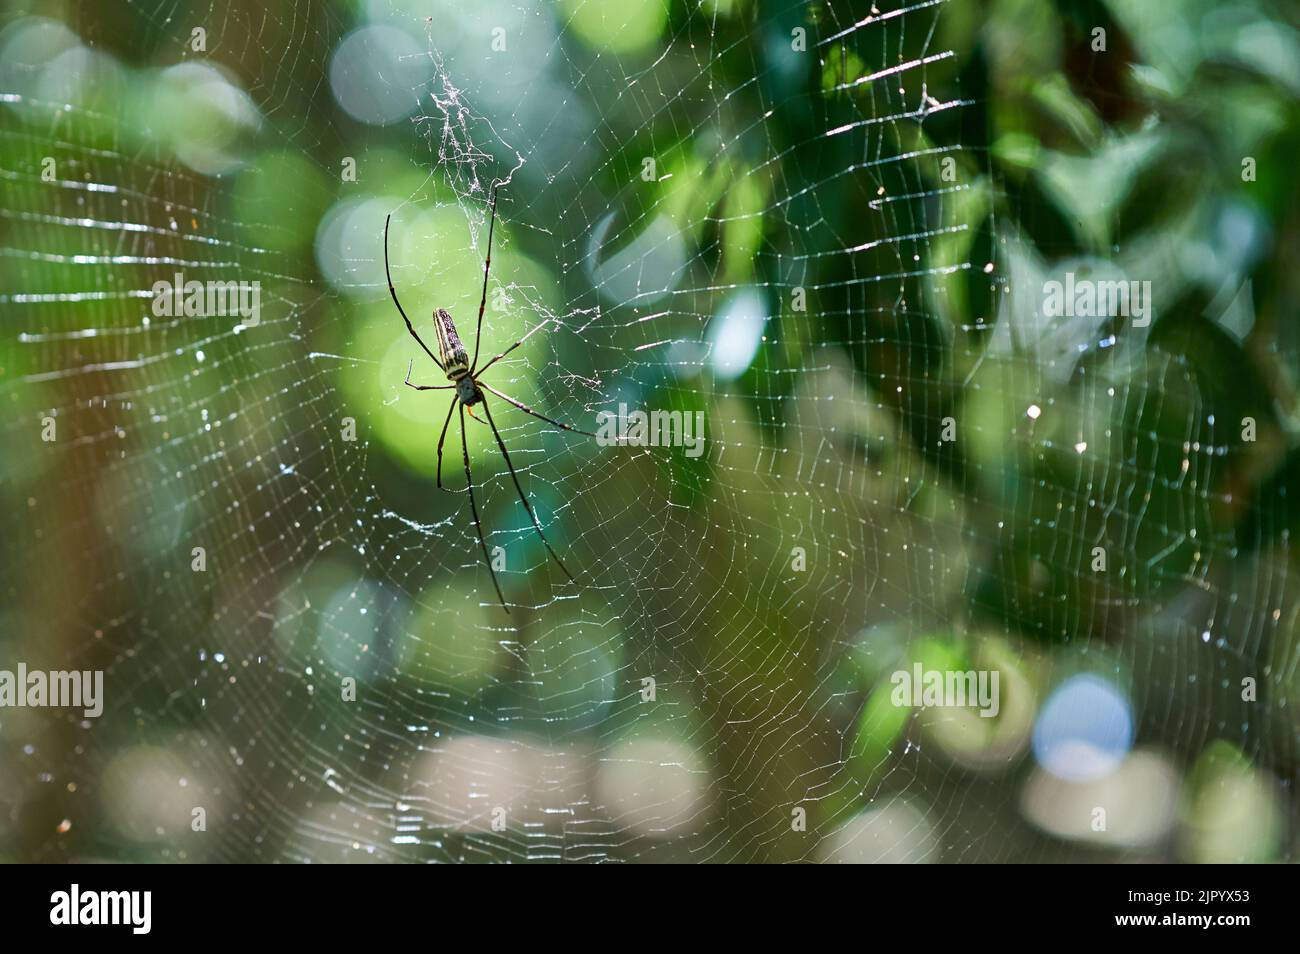 Eine große Spinne in einem Netz in einem grünen Wald, mit Abendsonne. Stockfoto